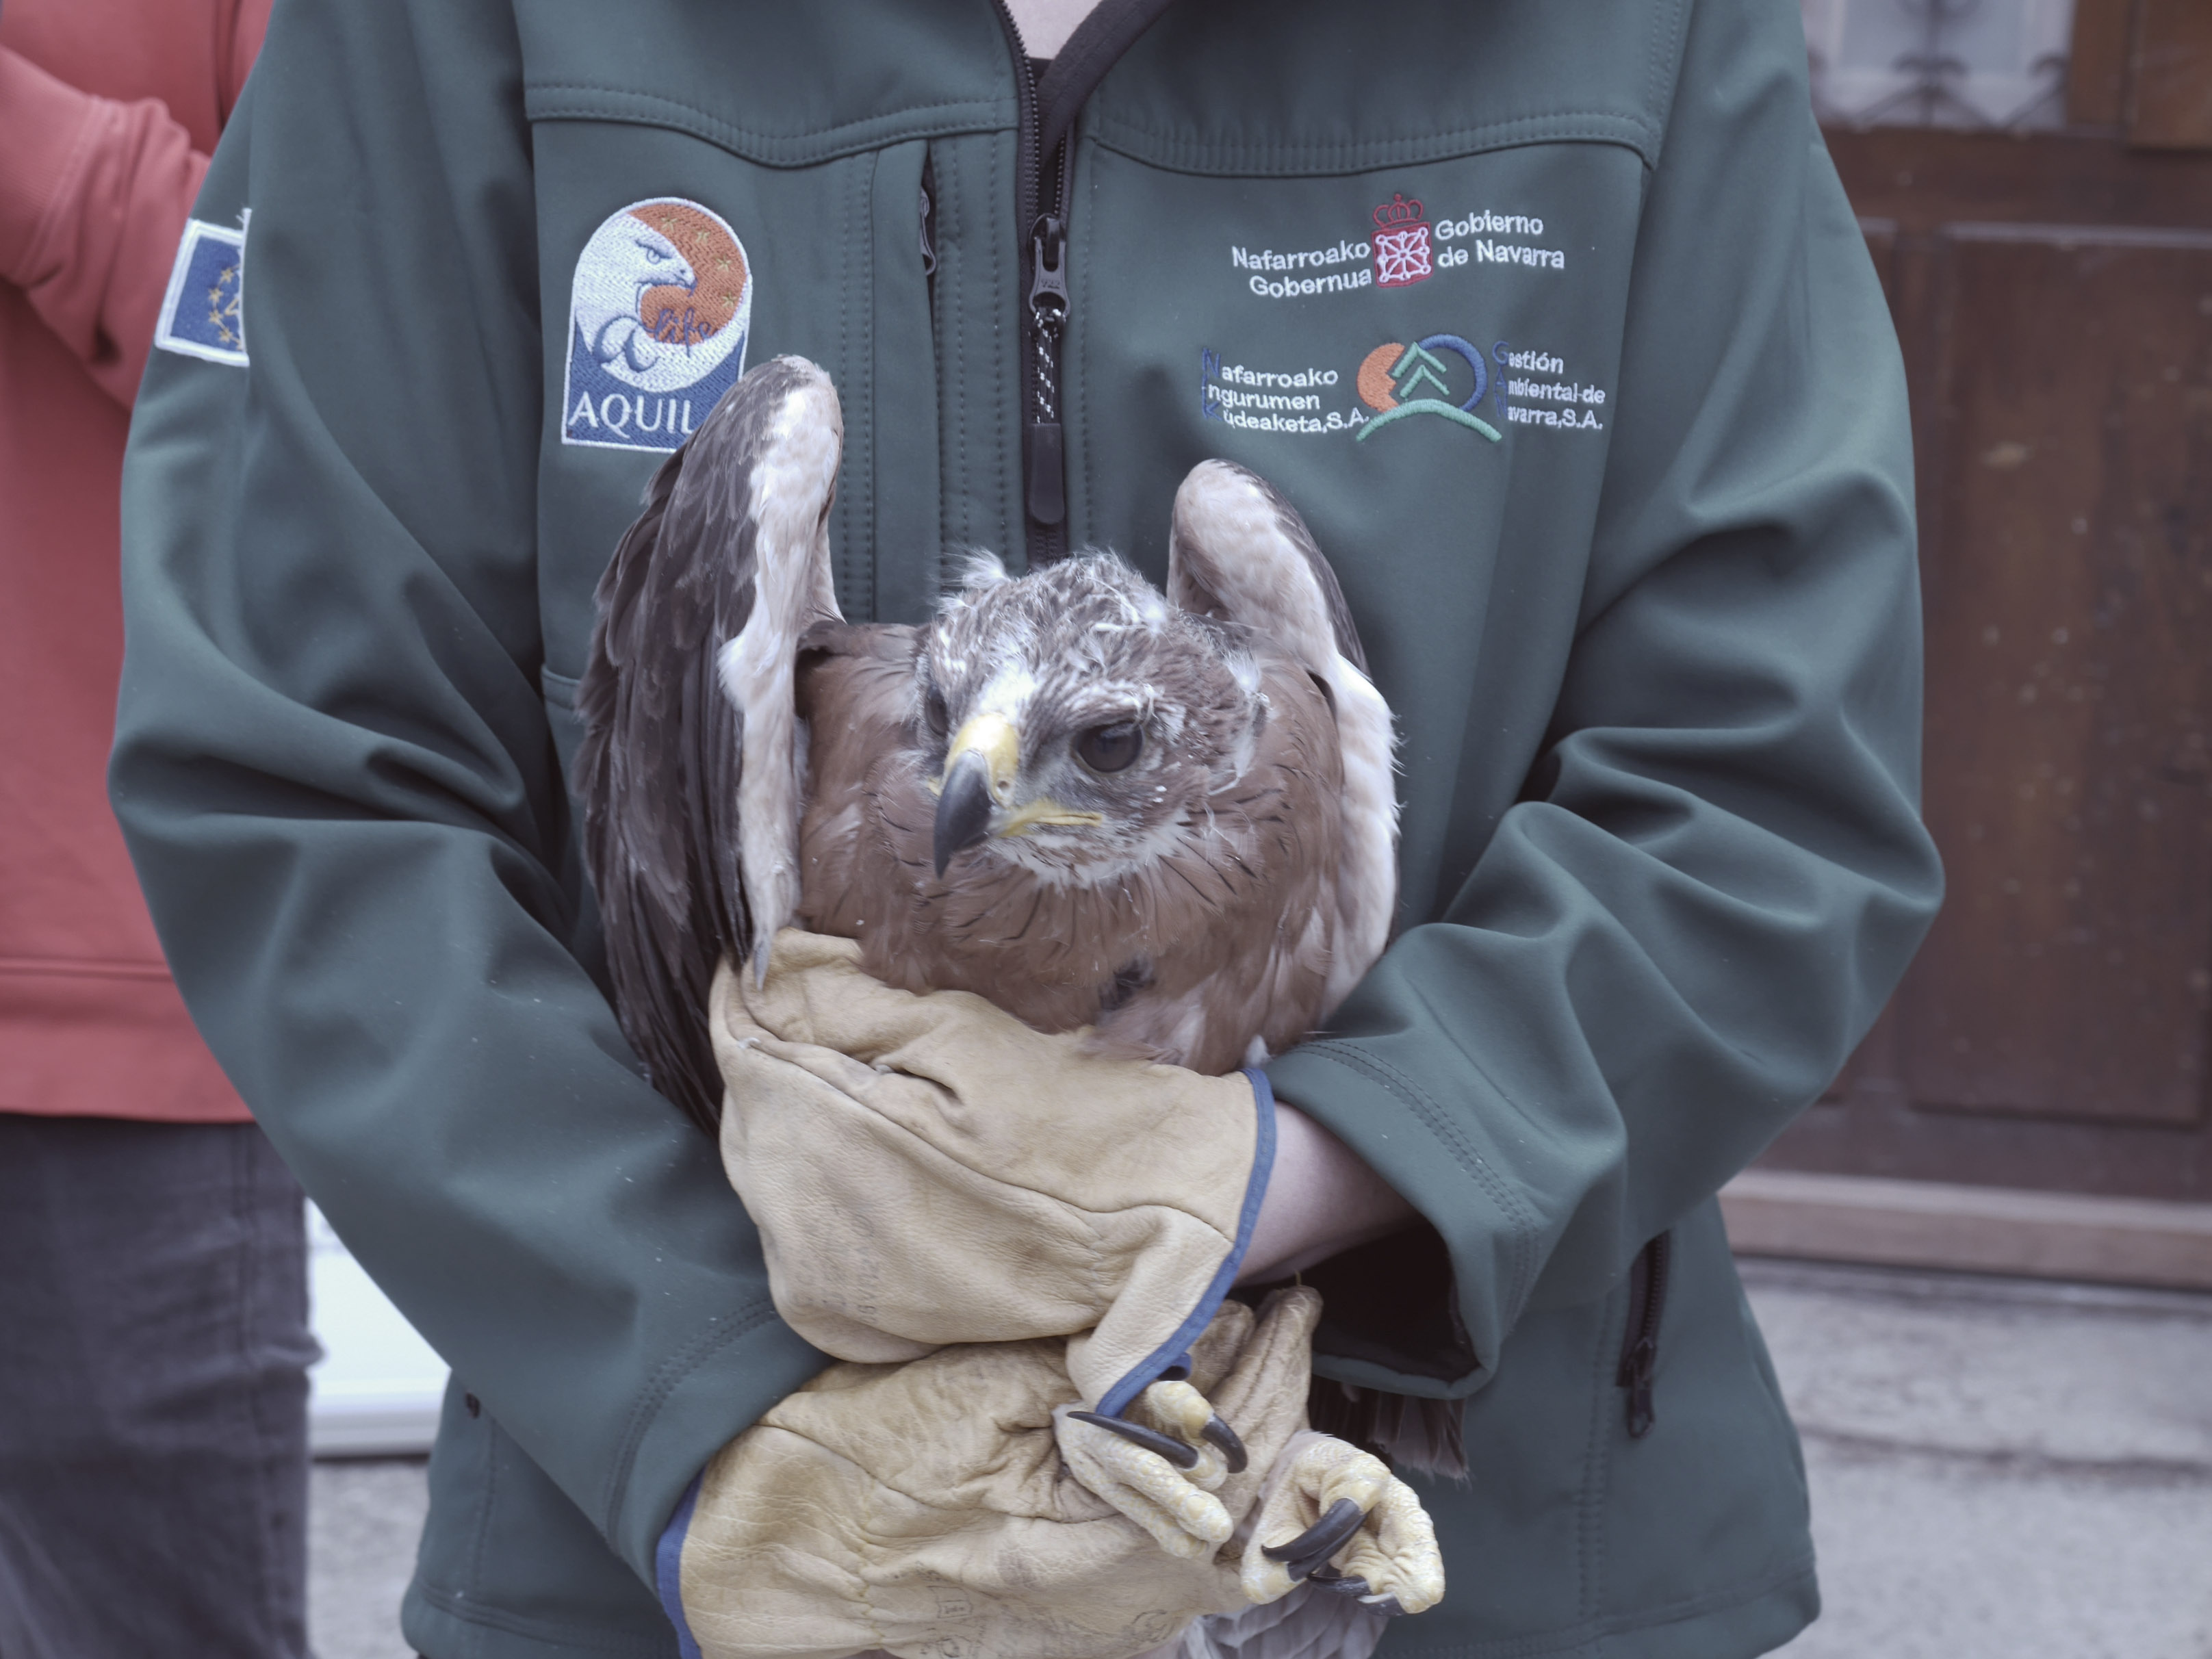 Fotografía de una persona sosteniendo entre sus brazos un ejemplar de águila.